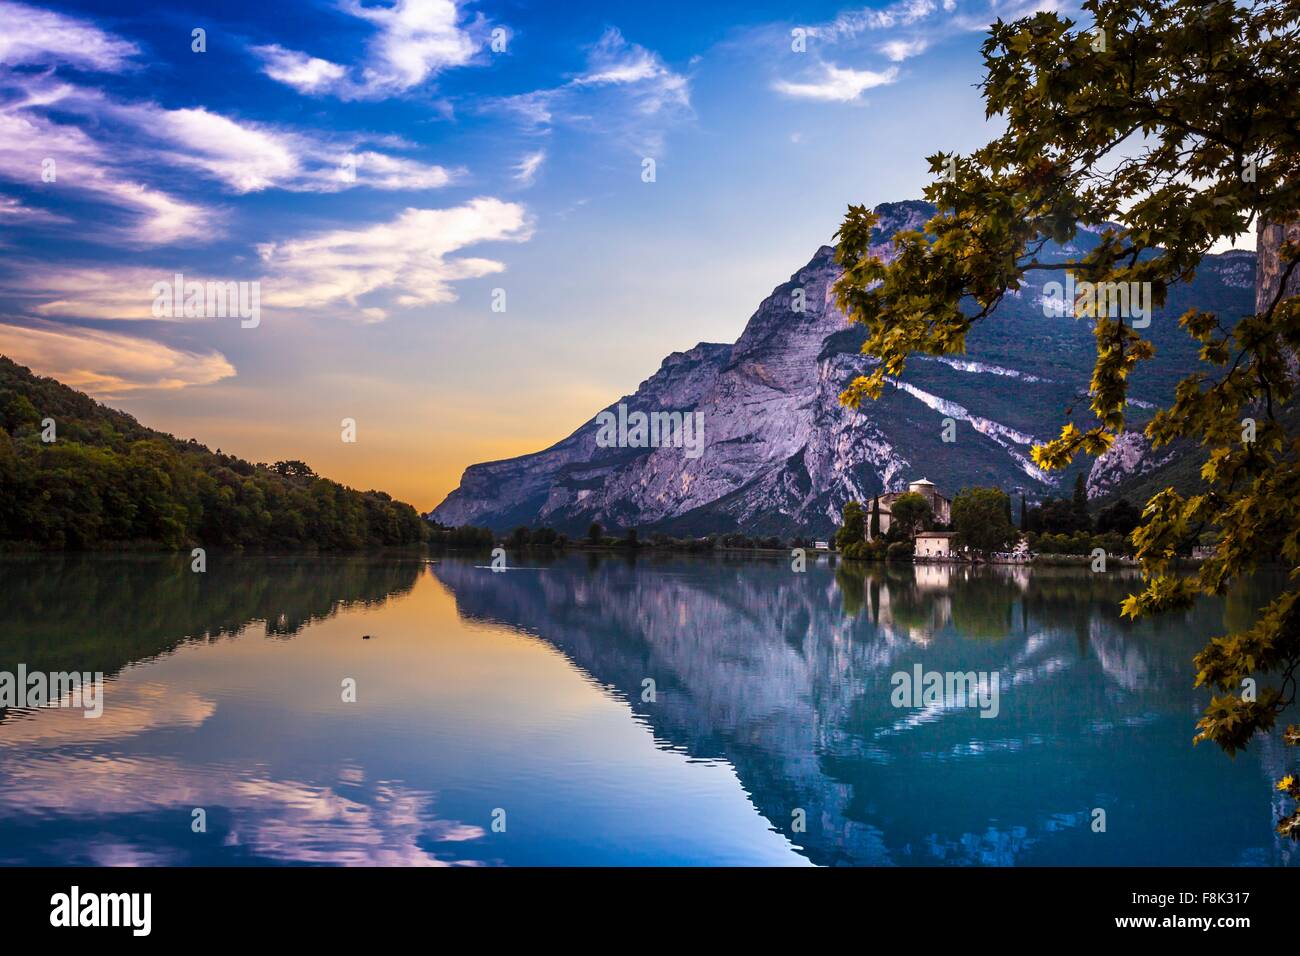 Vista del lago y las montañas, Trentino Alto Adige, Italia Foto de stock